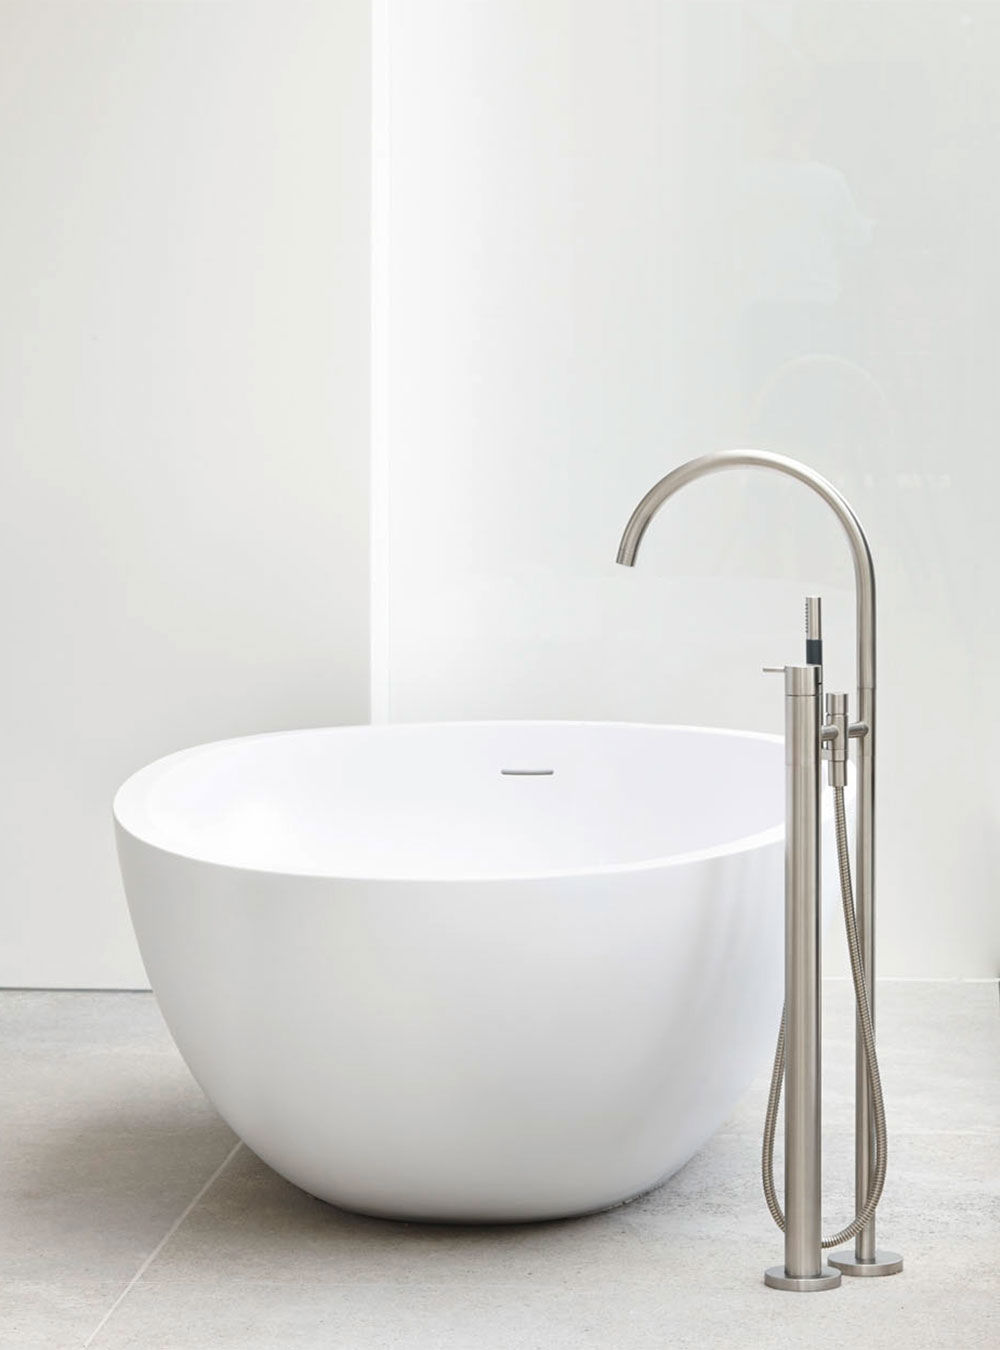 FS5: Armatur til fritstående badekar med svingbar tud. Højde 970 mm. FS5UP = Indbygningsdele til FS5.FS5A